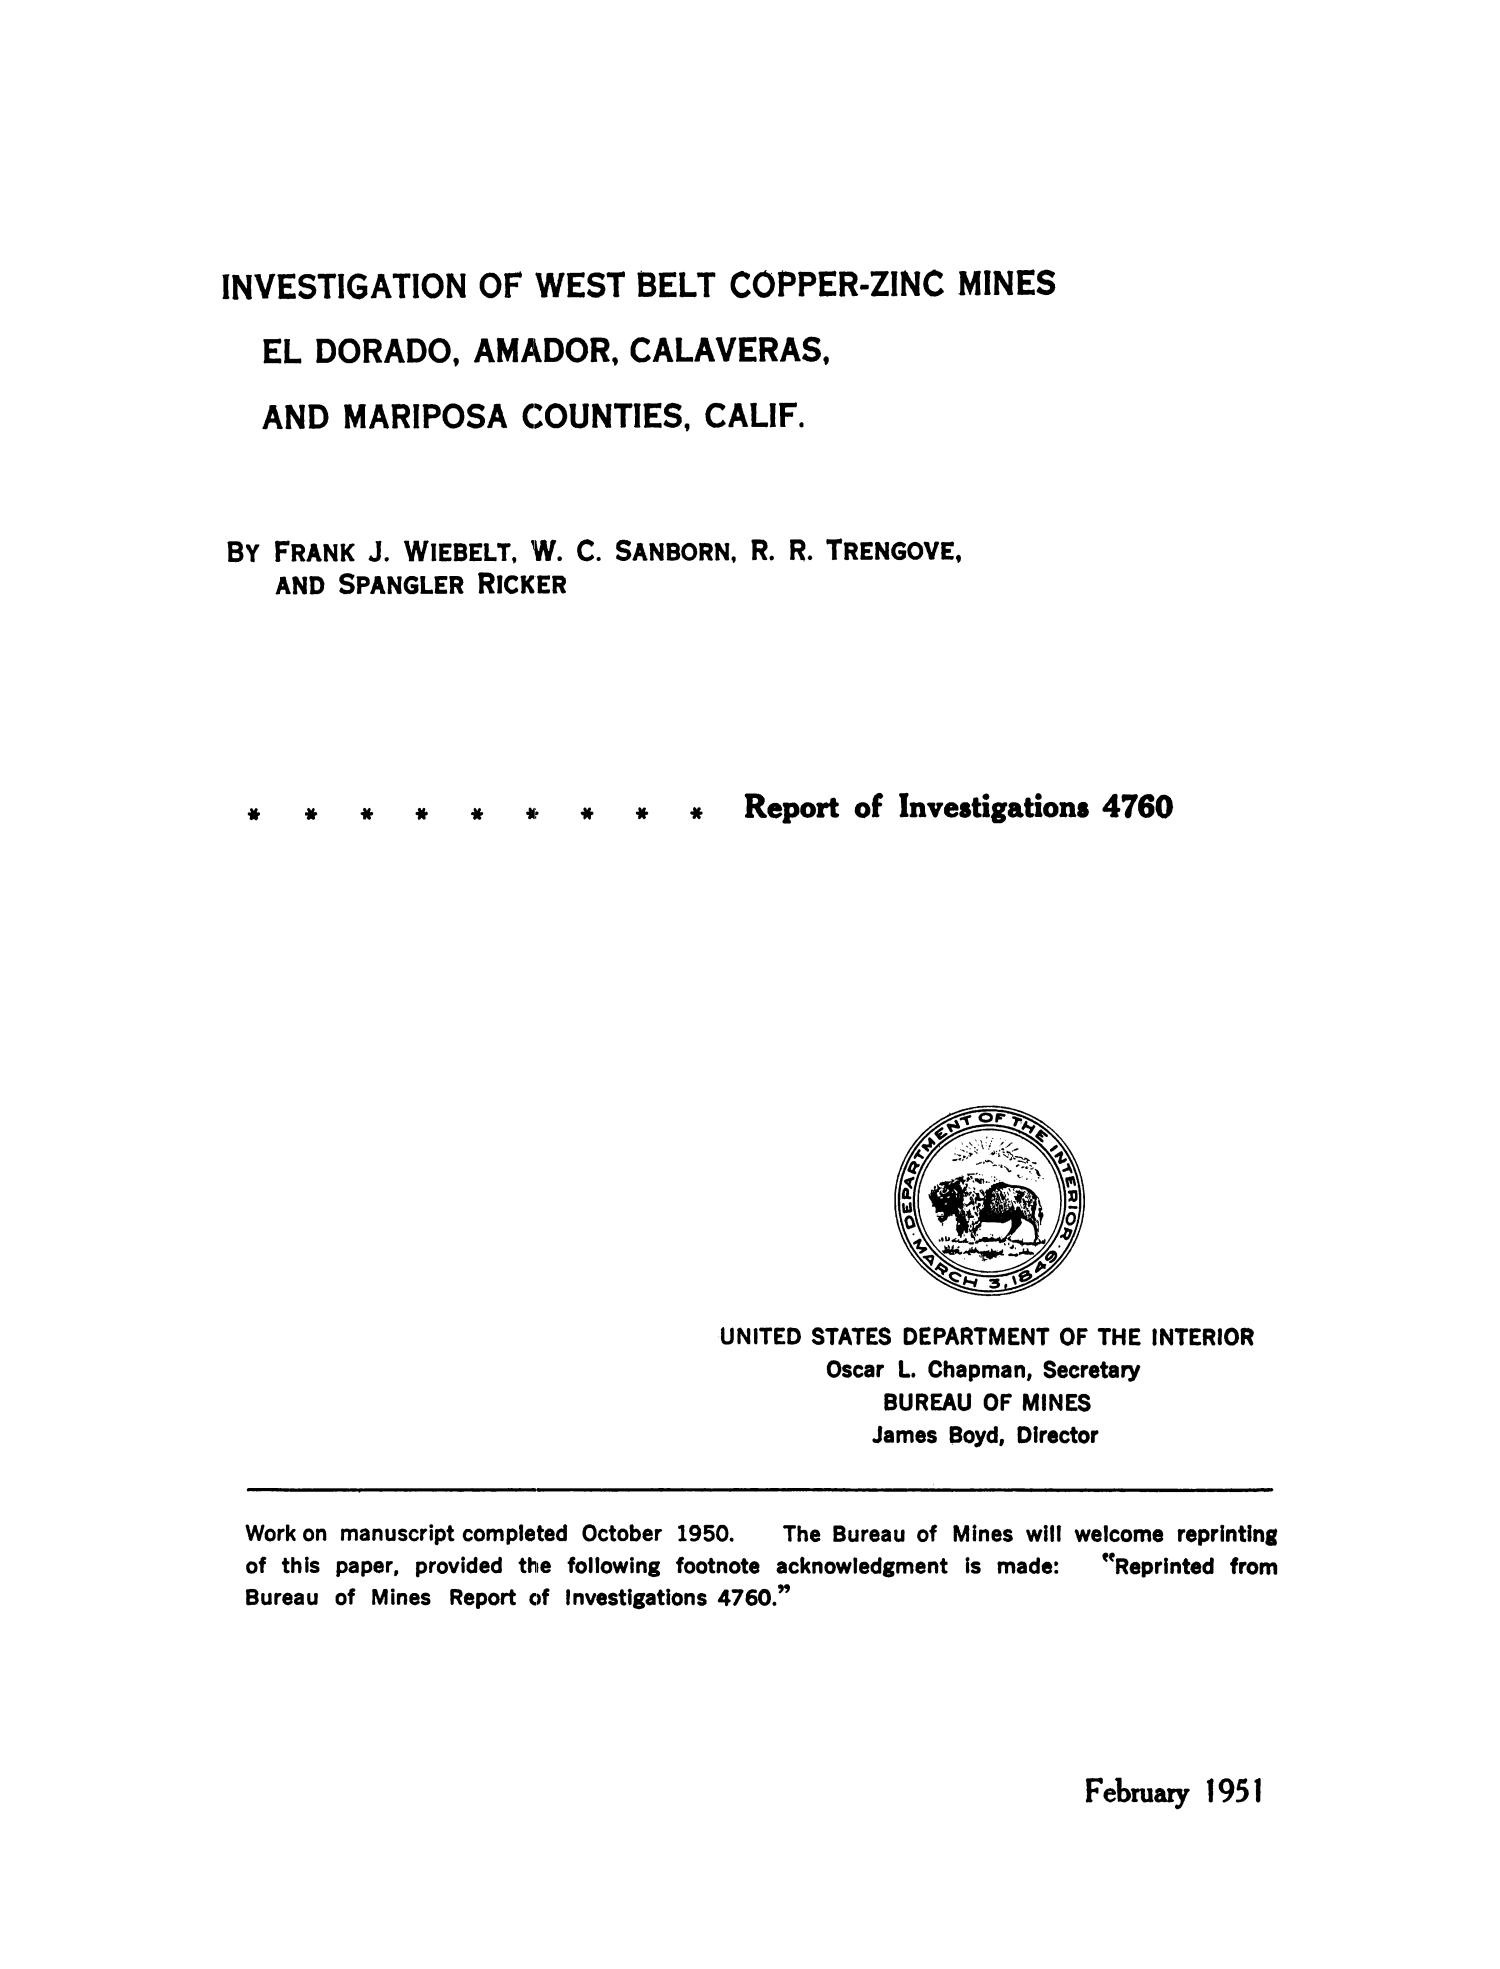 Investigation of West Belt Copper-Zinc Mines, El Dorado, Amador, Calaveras, and Mariposa Counties, California
                                                
                                                    Title Page
                                                